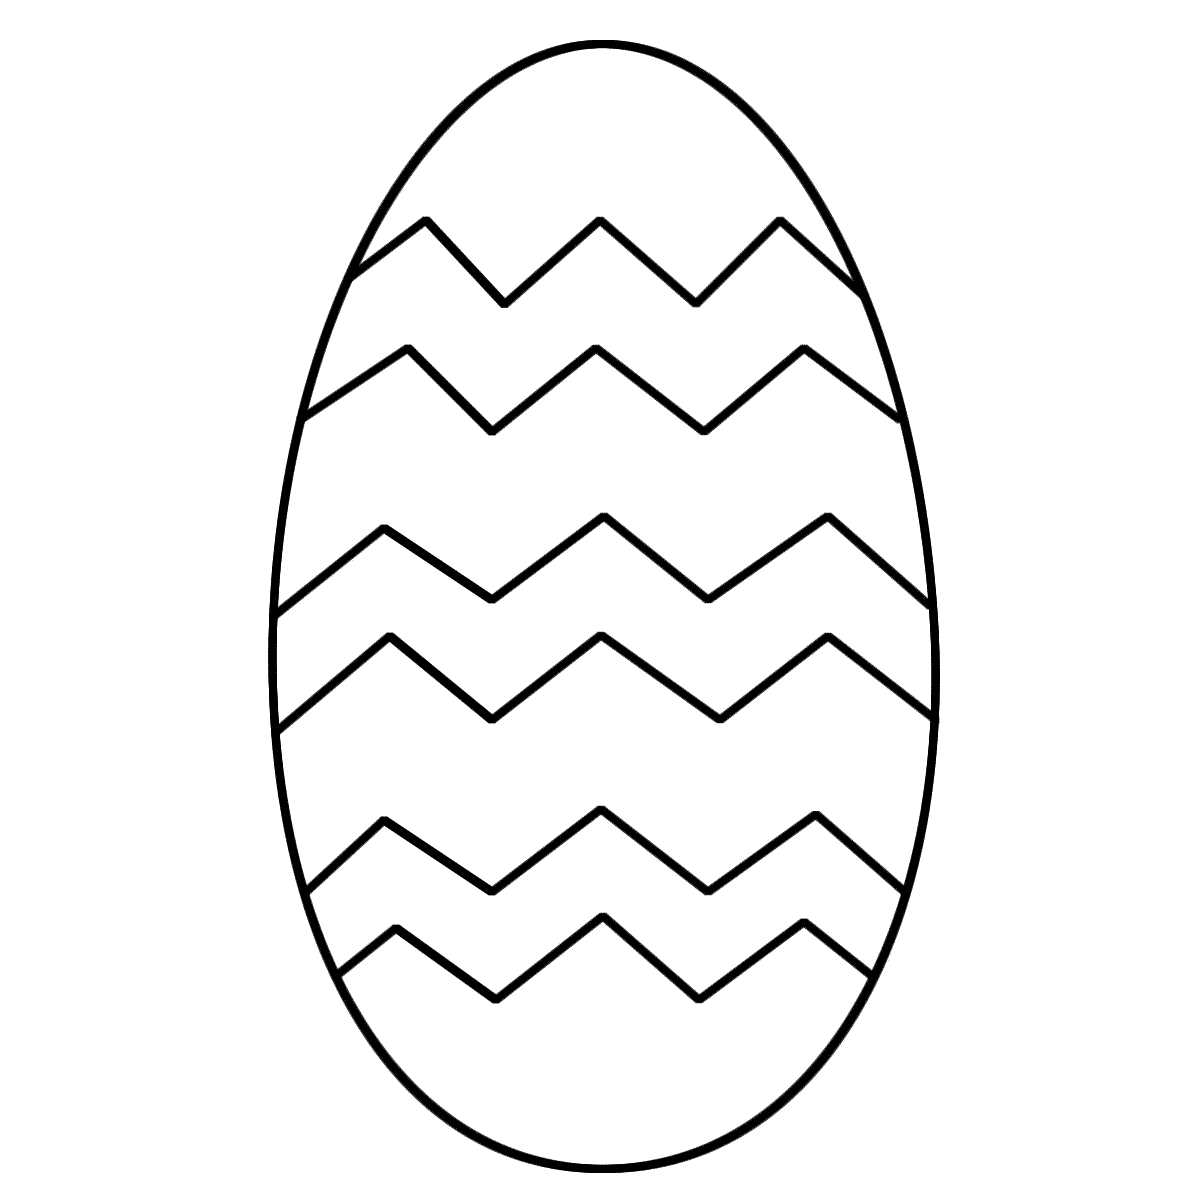 Free Egg Of Egg Black And White Clipart